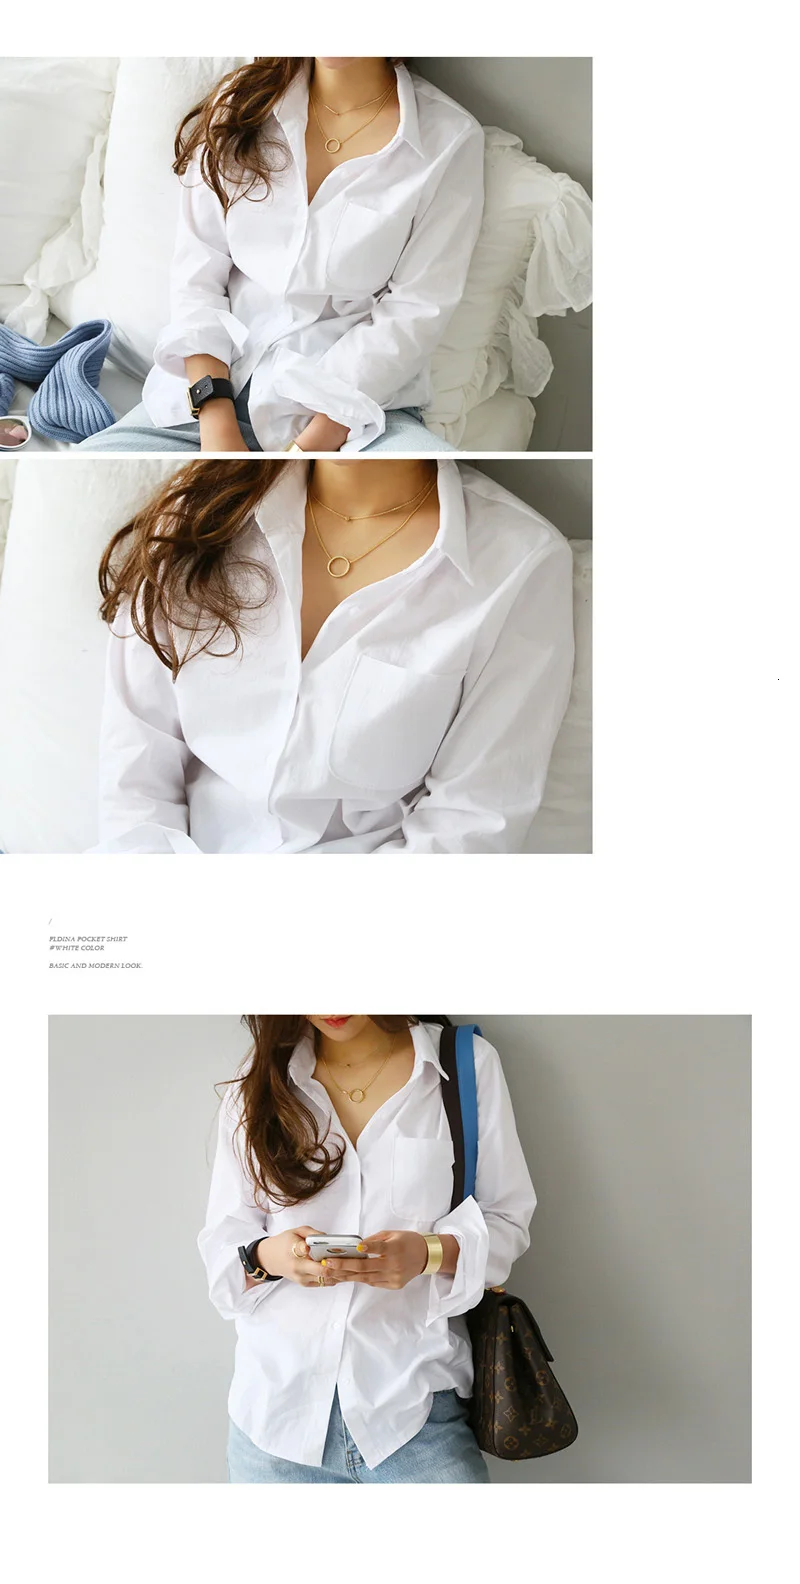 RICORIT весенние Блузки Женская белая рубашка женская блузка с одним карманом с длинным рукавом модная повседневная OL с отложным воротником Свободный стиль Топ